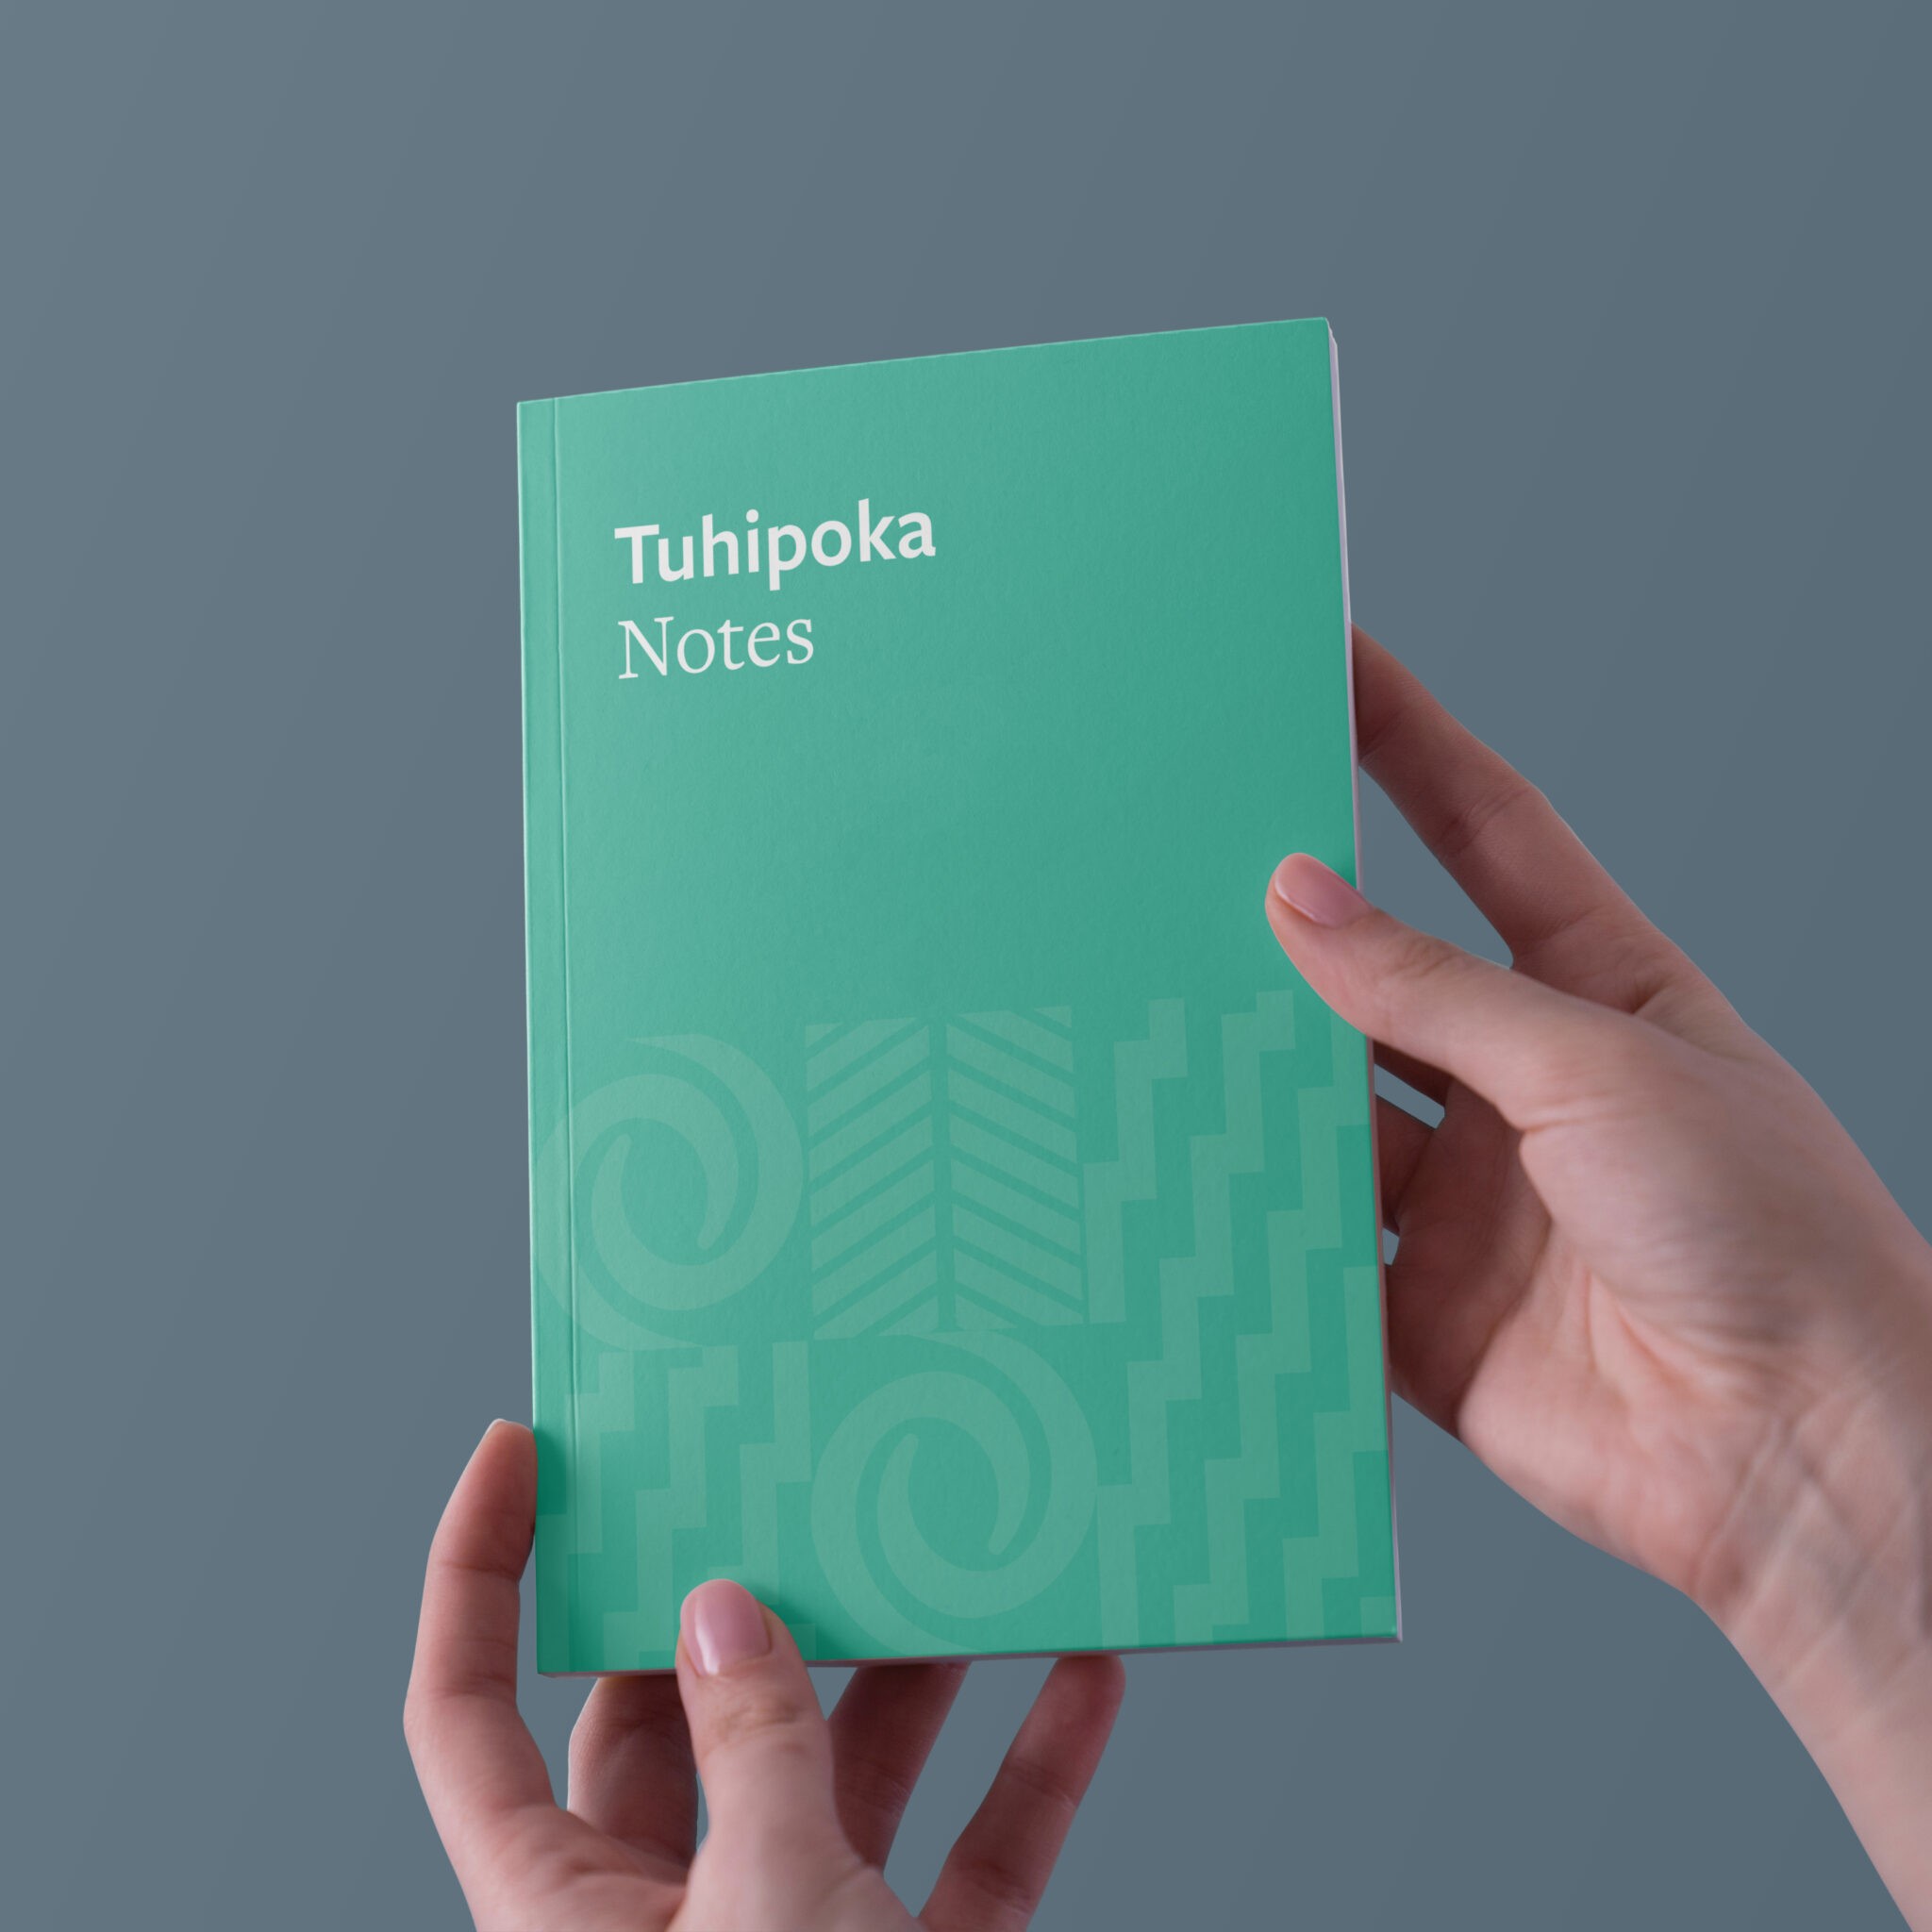 Notizbuch im Akoako Branding, das von zwei Händen gehalten wird mit de Aufschrift "Tuhipoka"